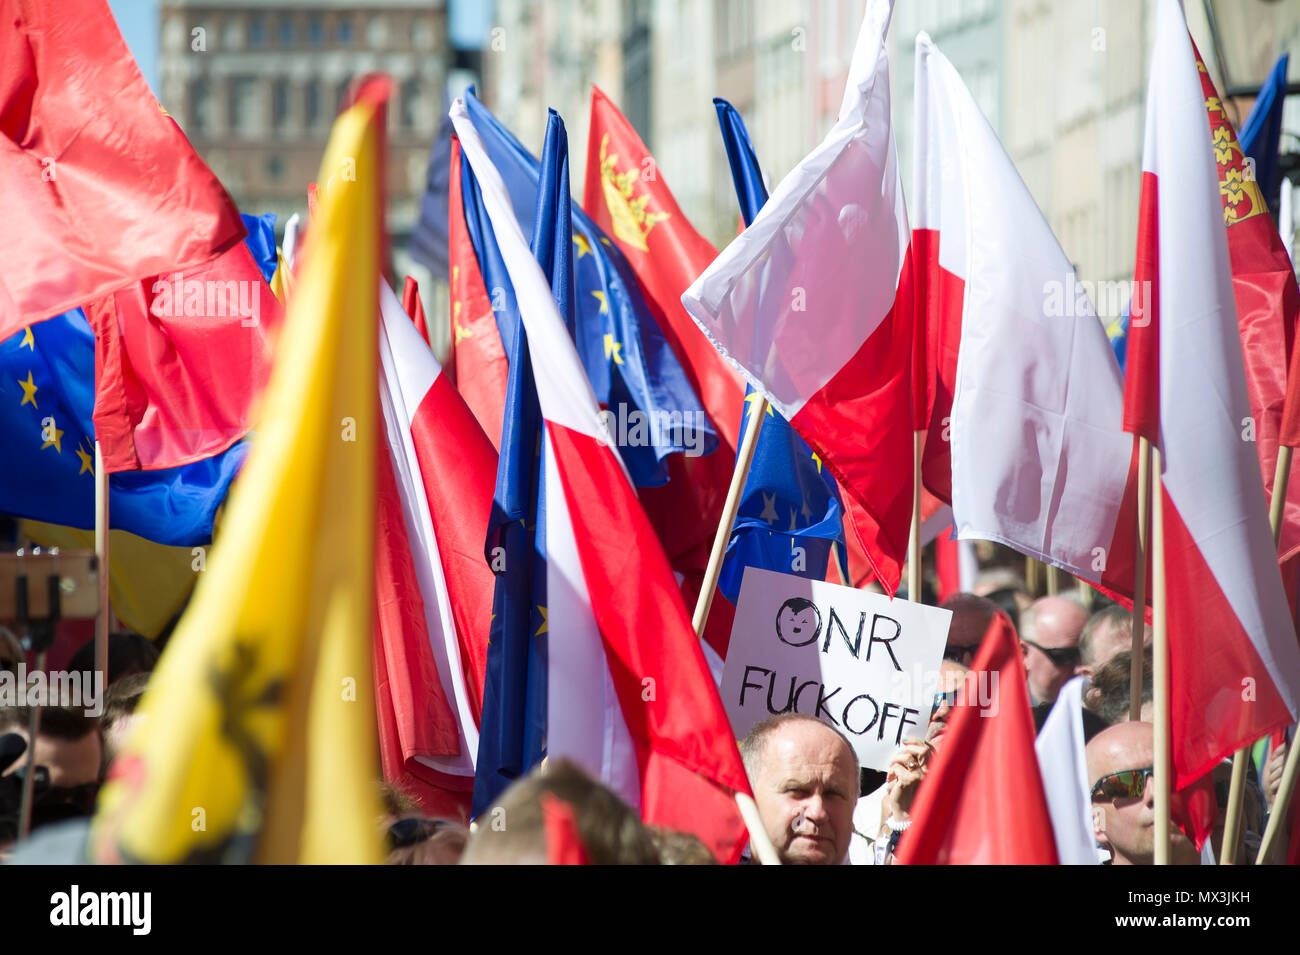 Anti ONR protest in Gdansk, Poland. April 21st 2018 © Wojciech Strozyk / Alamy Stock Photo Stock Photo